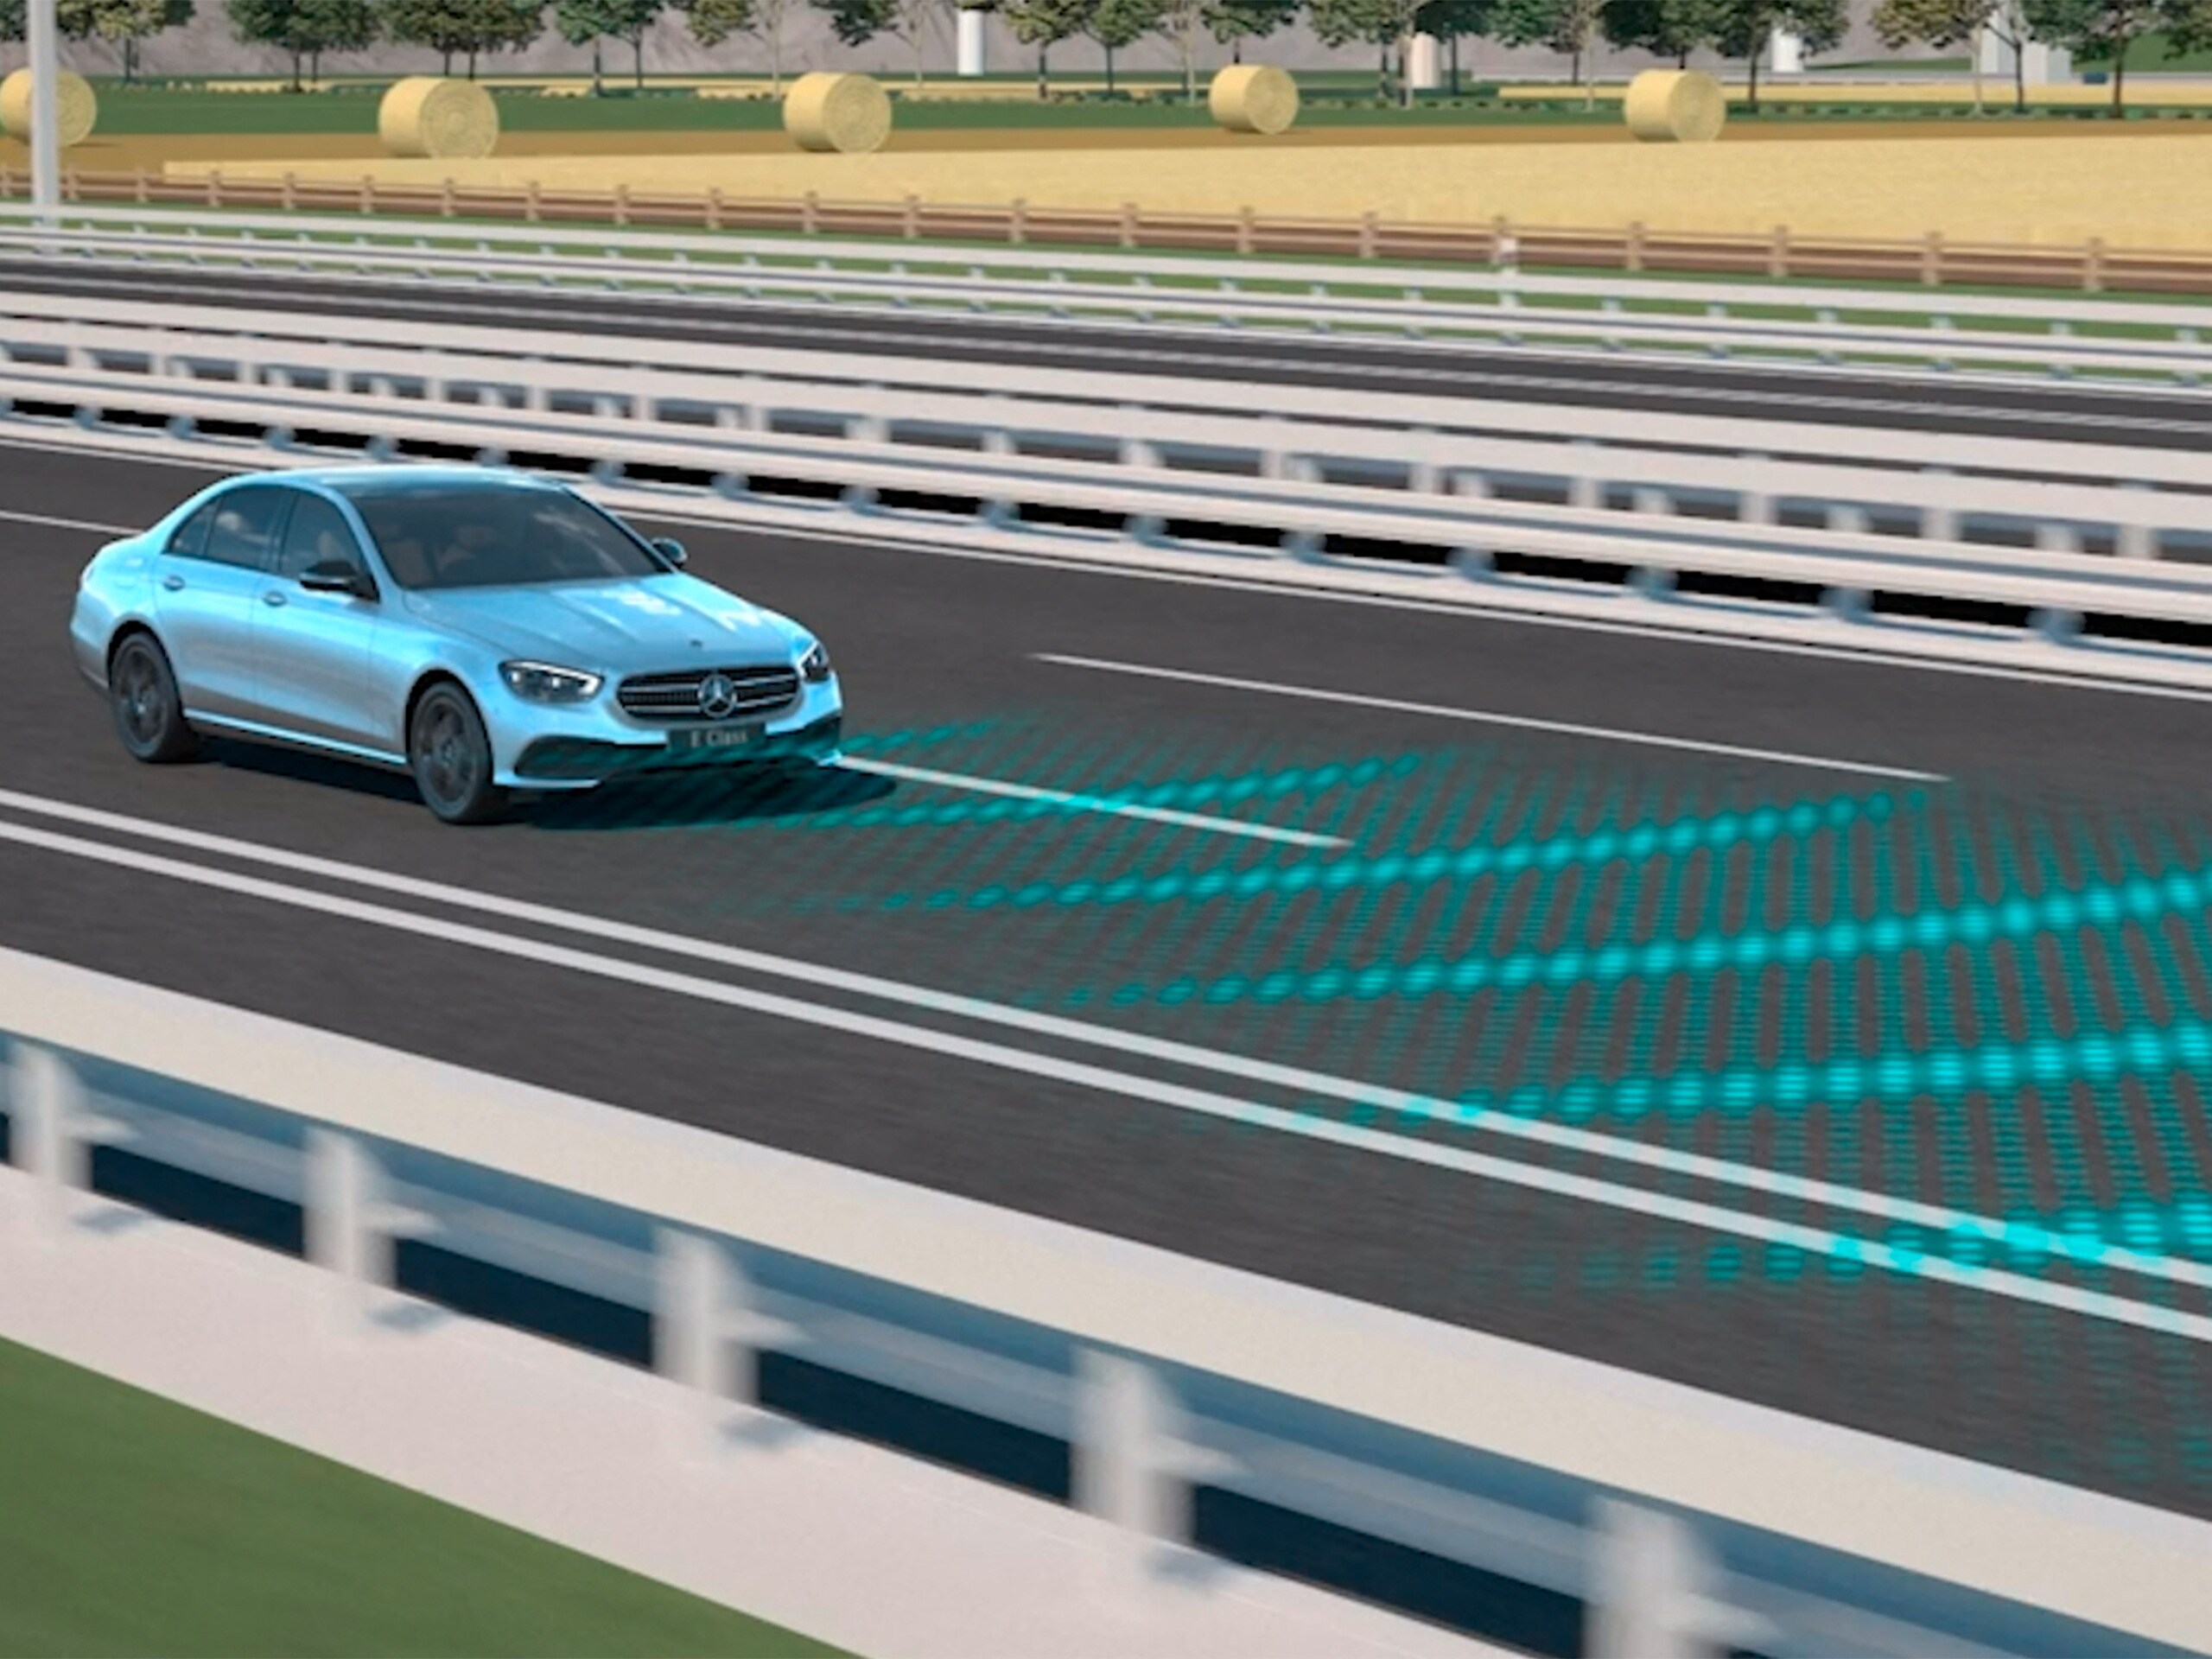 Videoda, Mercedes-Benz CLS Coupé'deki aktif mesafe ayar yardımcısı DISTRONIC'in fonksiyonları gösterilmektedir.